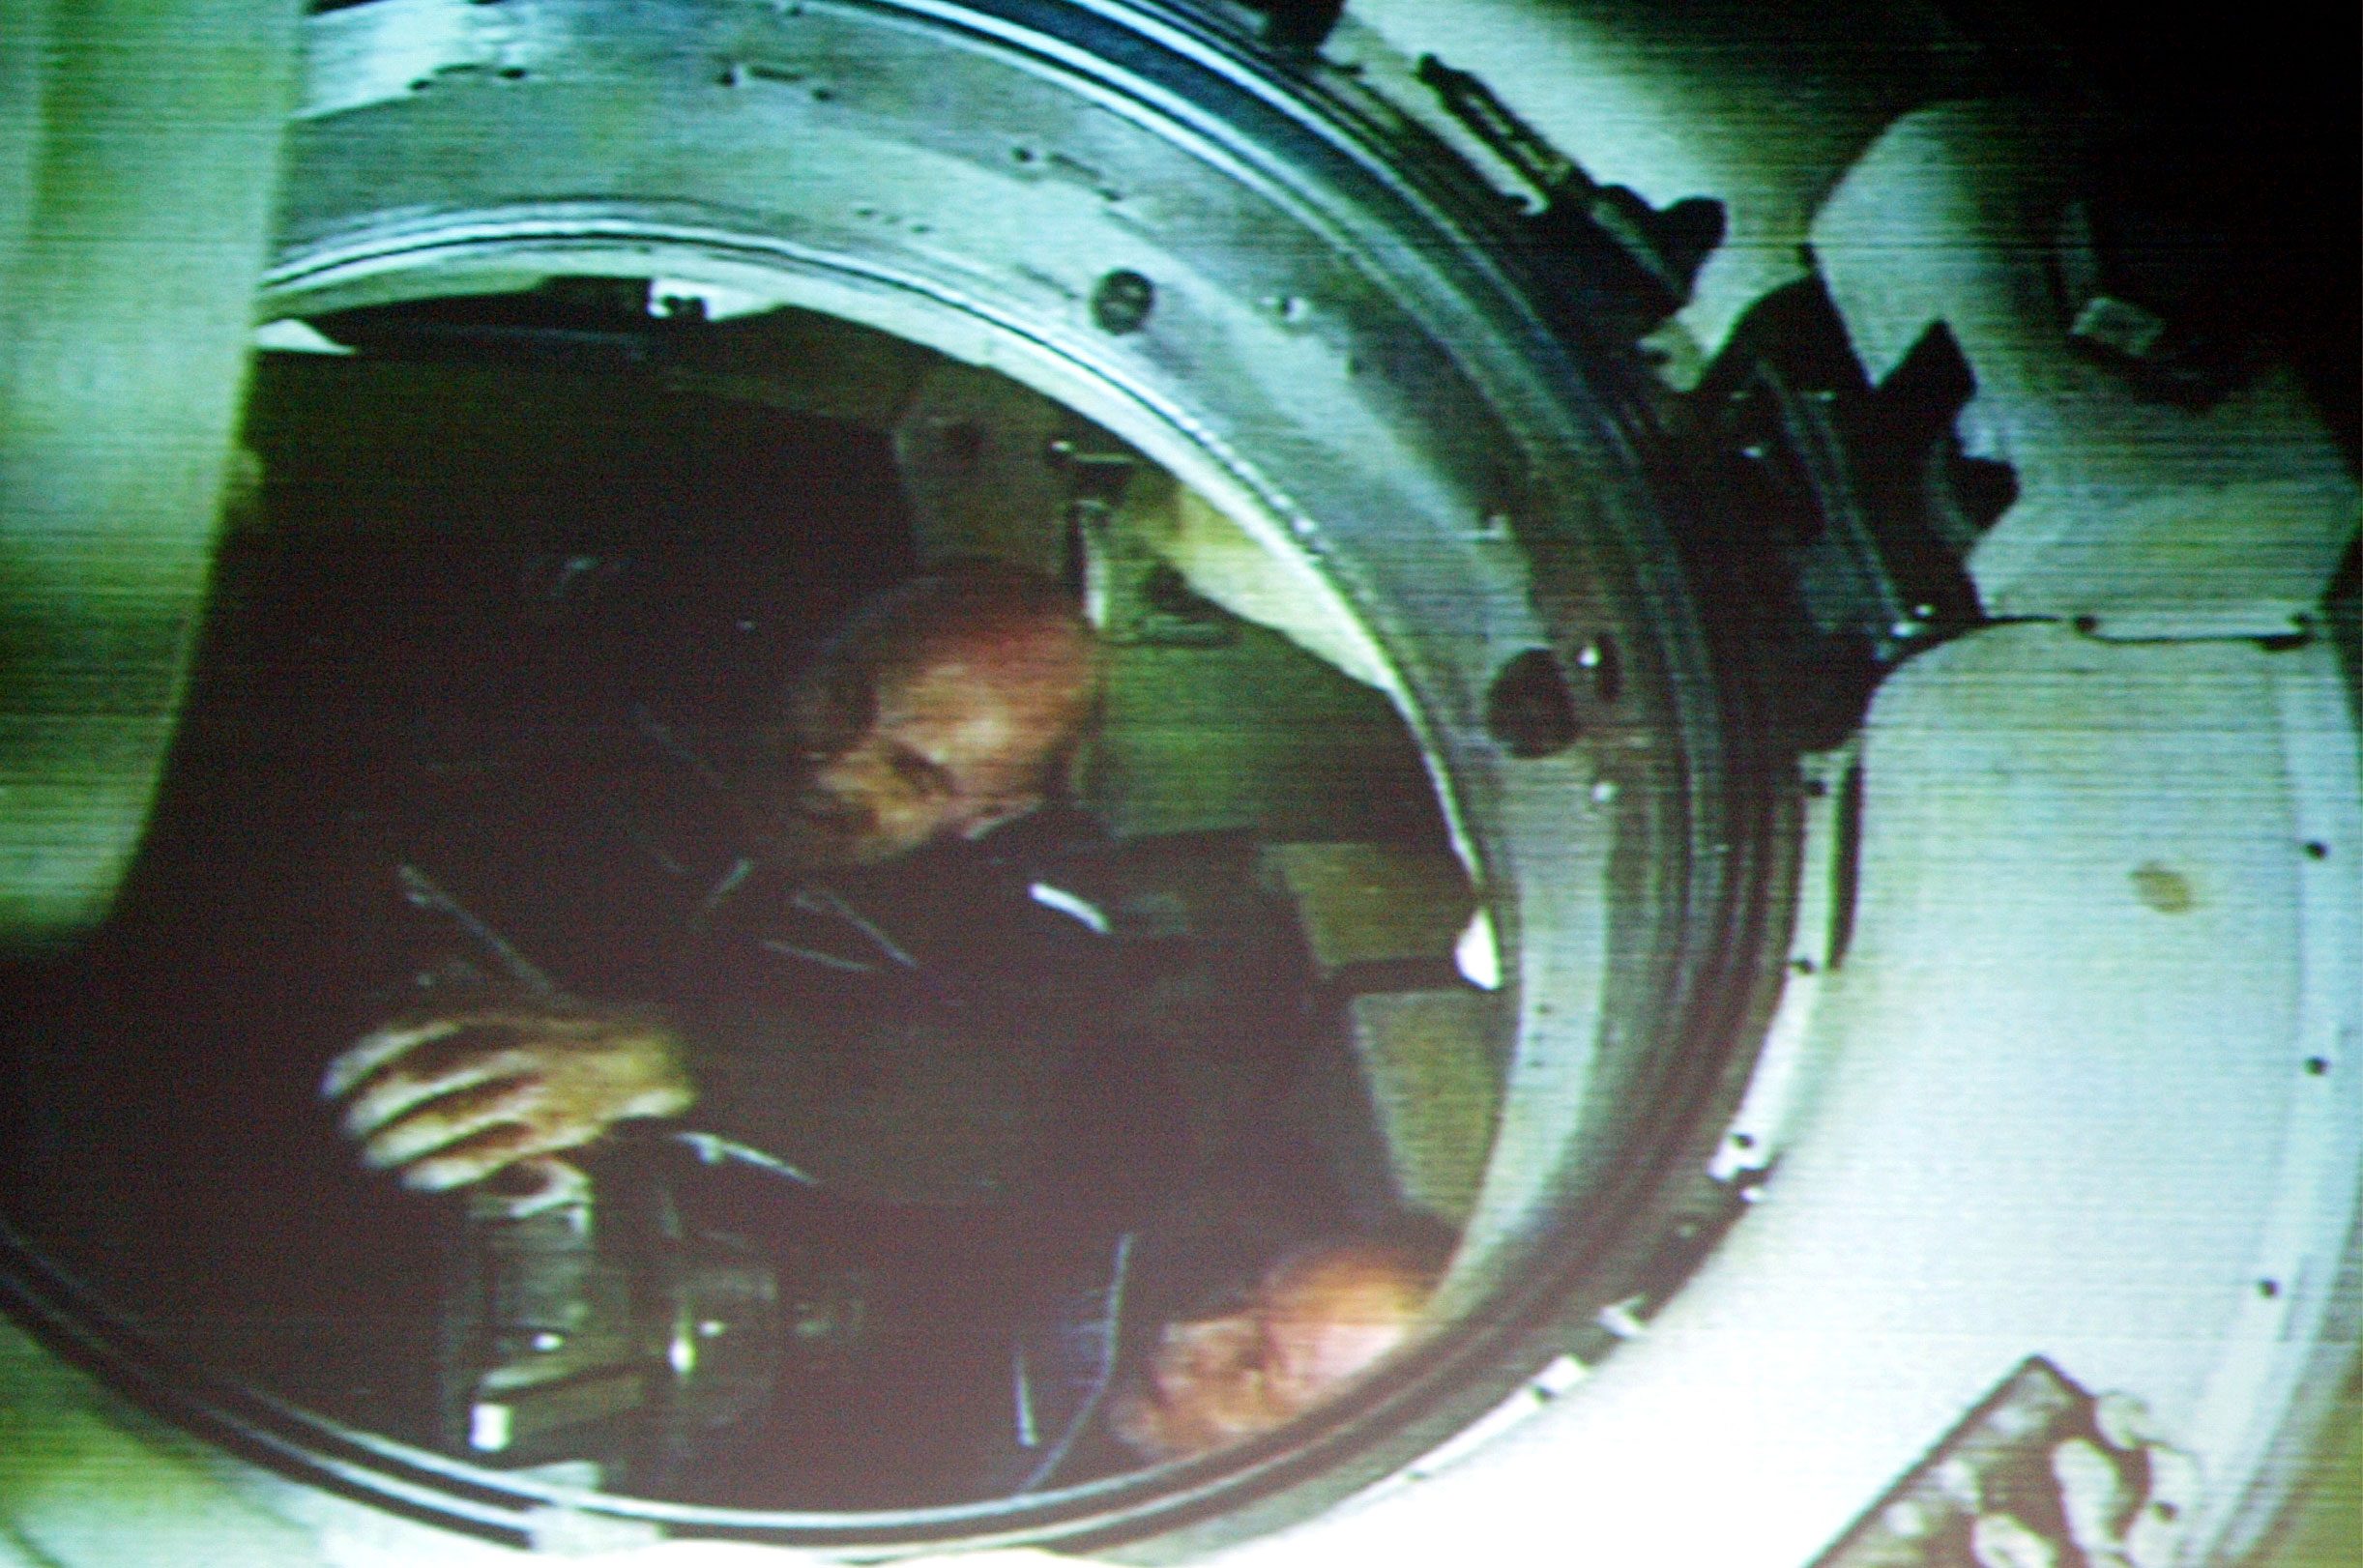 Soyuz-ruimtecapsule van André Kuipers ‘landt’ in Noordwijk